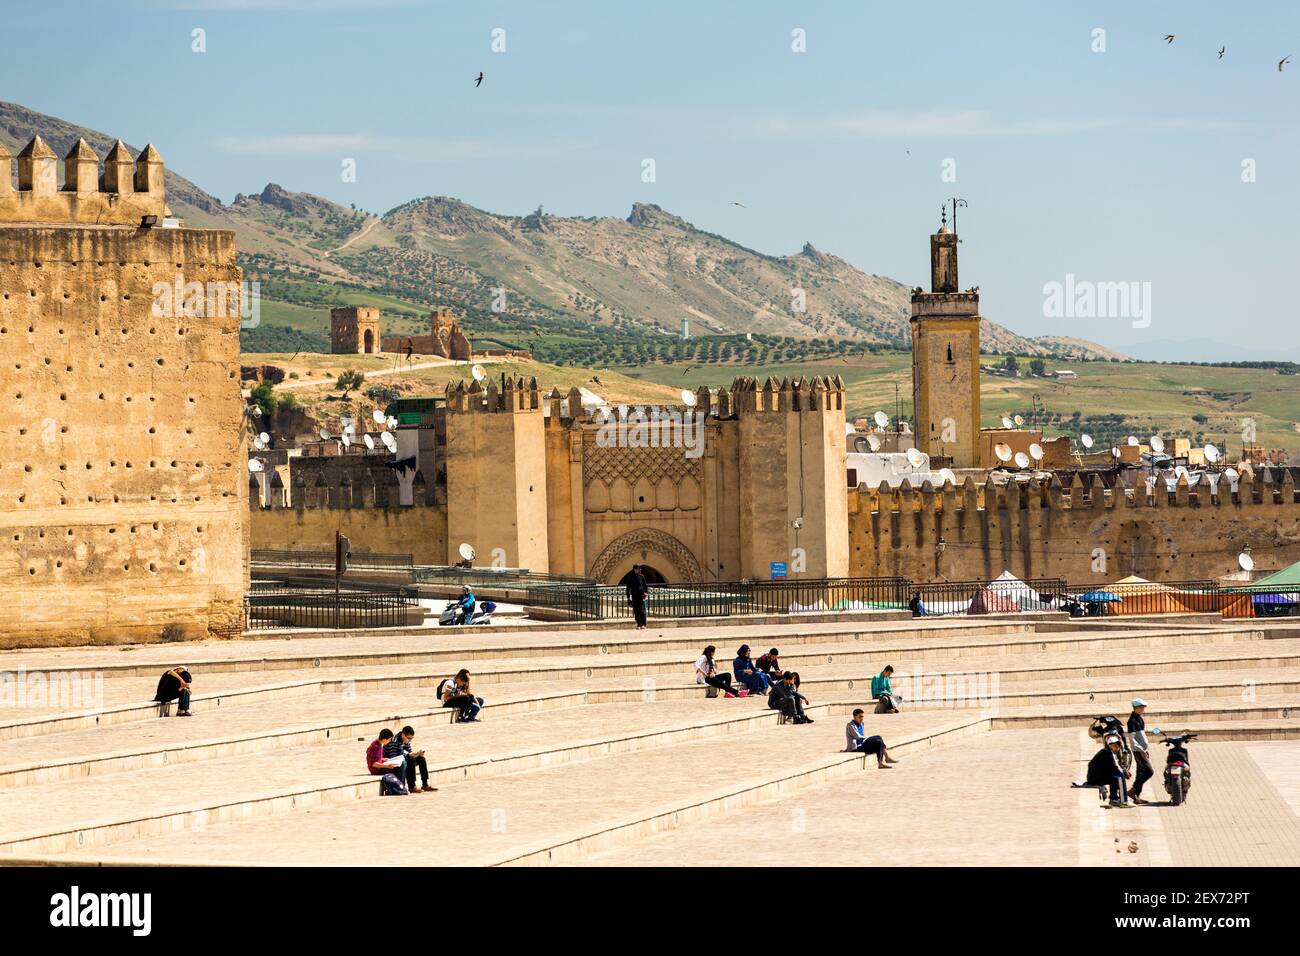 Marokko, Fes, Stadtmauern oder mechouar, die die im 17. Jahrhundert erbaute Stadt umgeben, mit Menschen, die auf einem offenen Platz sitzen Stockfoto